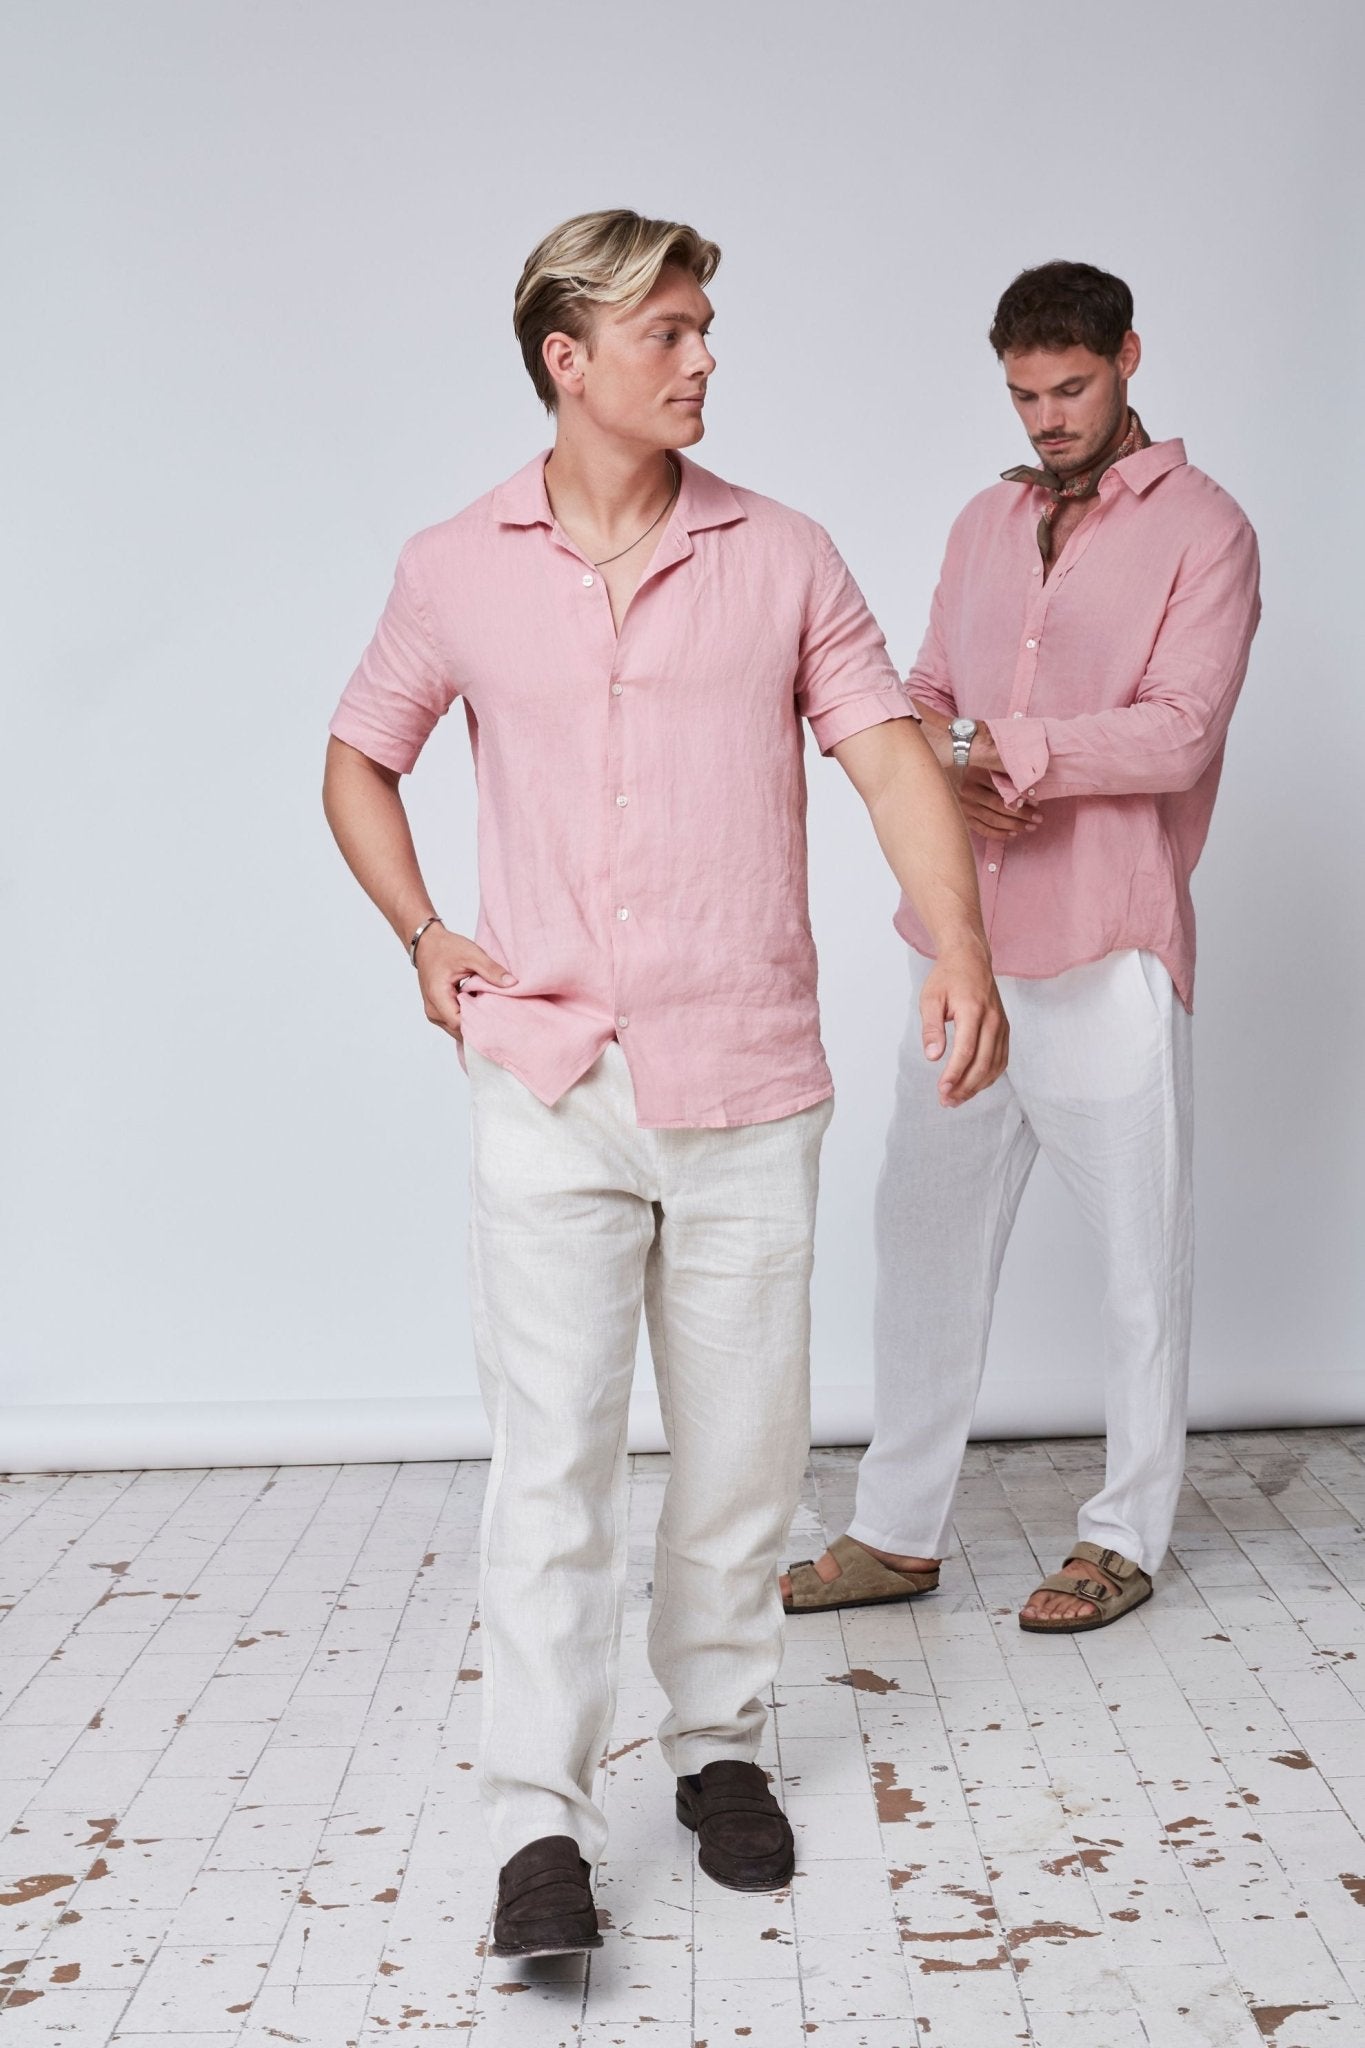 Uge 29 Skjorten Kortærmet (Rosé) - Skagen Clothing DK